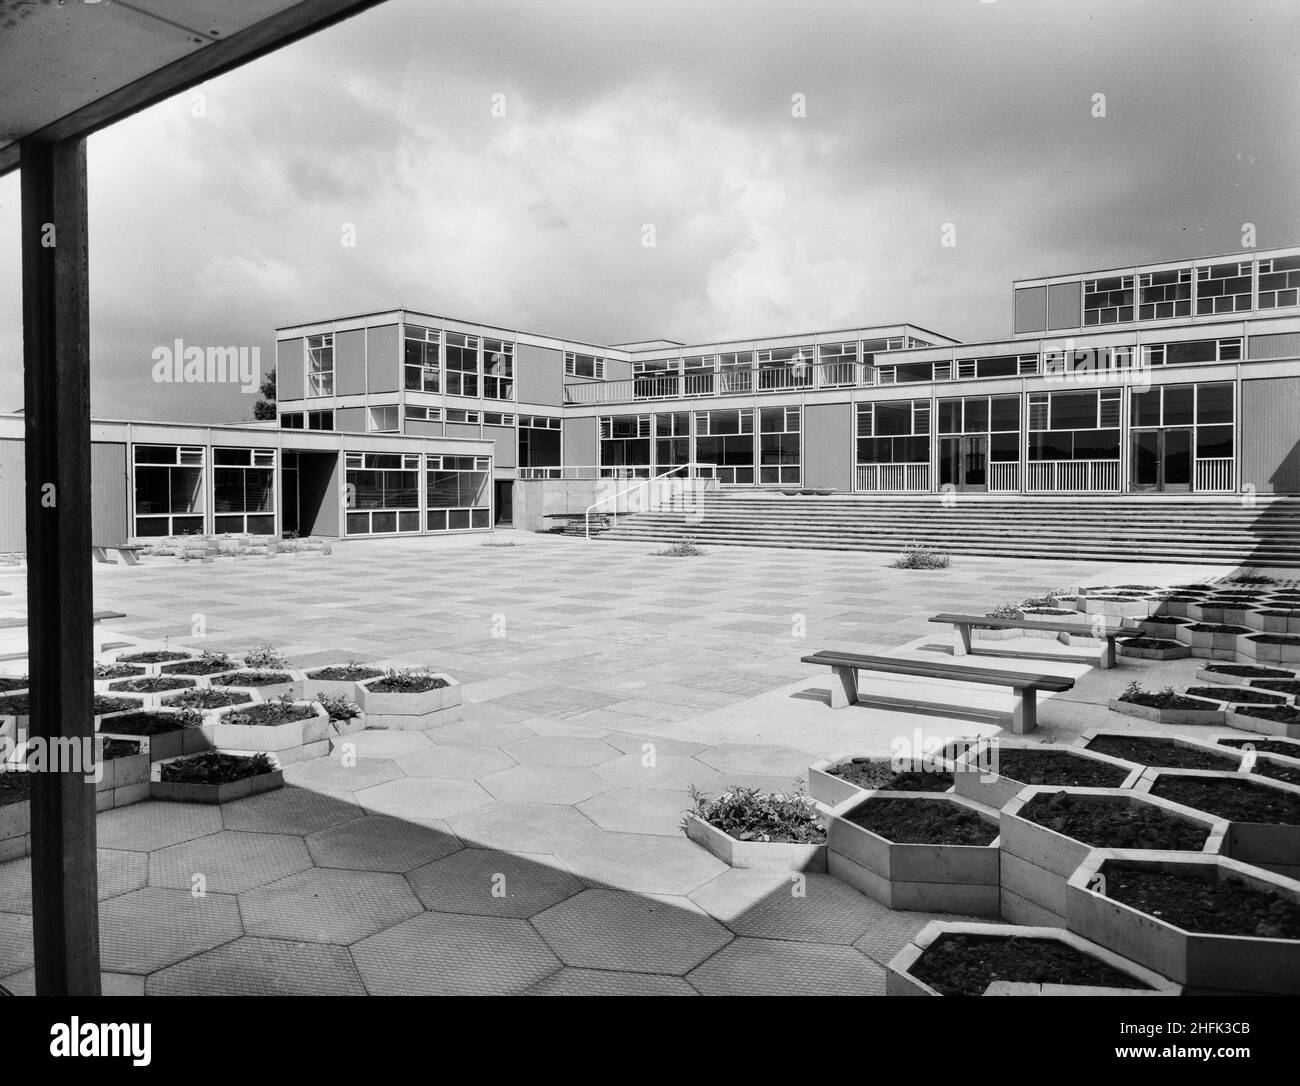 County High School, Gedling Road, Arnold, Gedling, Notinghamshire,29/07/1959.La cour principale de l'Arnold County High School, vue depuis le coin sud-est, montre un revêtement hexagonal et des parterres de fleurs surélevées au premier plan.Les travaux ont commencé sur le site en mars 1958 et les travaux de construction ont été achevés pour la nouvelle période scolaire en septembre 1959.L'école de grammaire co-éducative a accueilli 720 élèves.Au milieu de 1960s, une autre école a été construite à proximité et, en 1974, les deux ont été fusionnées en une école complète.Les bâtiments scolaires construits par Laing ont finalement été démolis en 2017. Banque D'Images